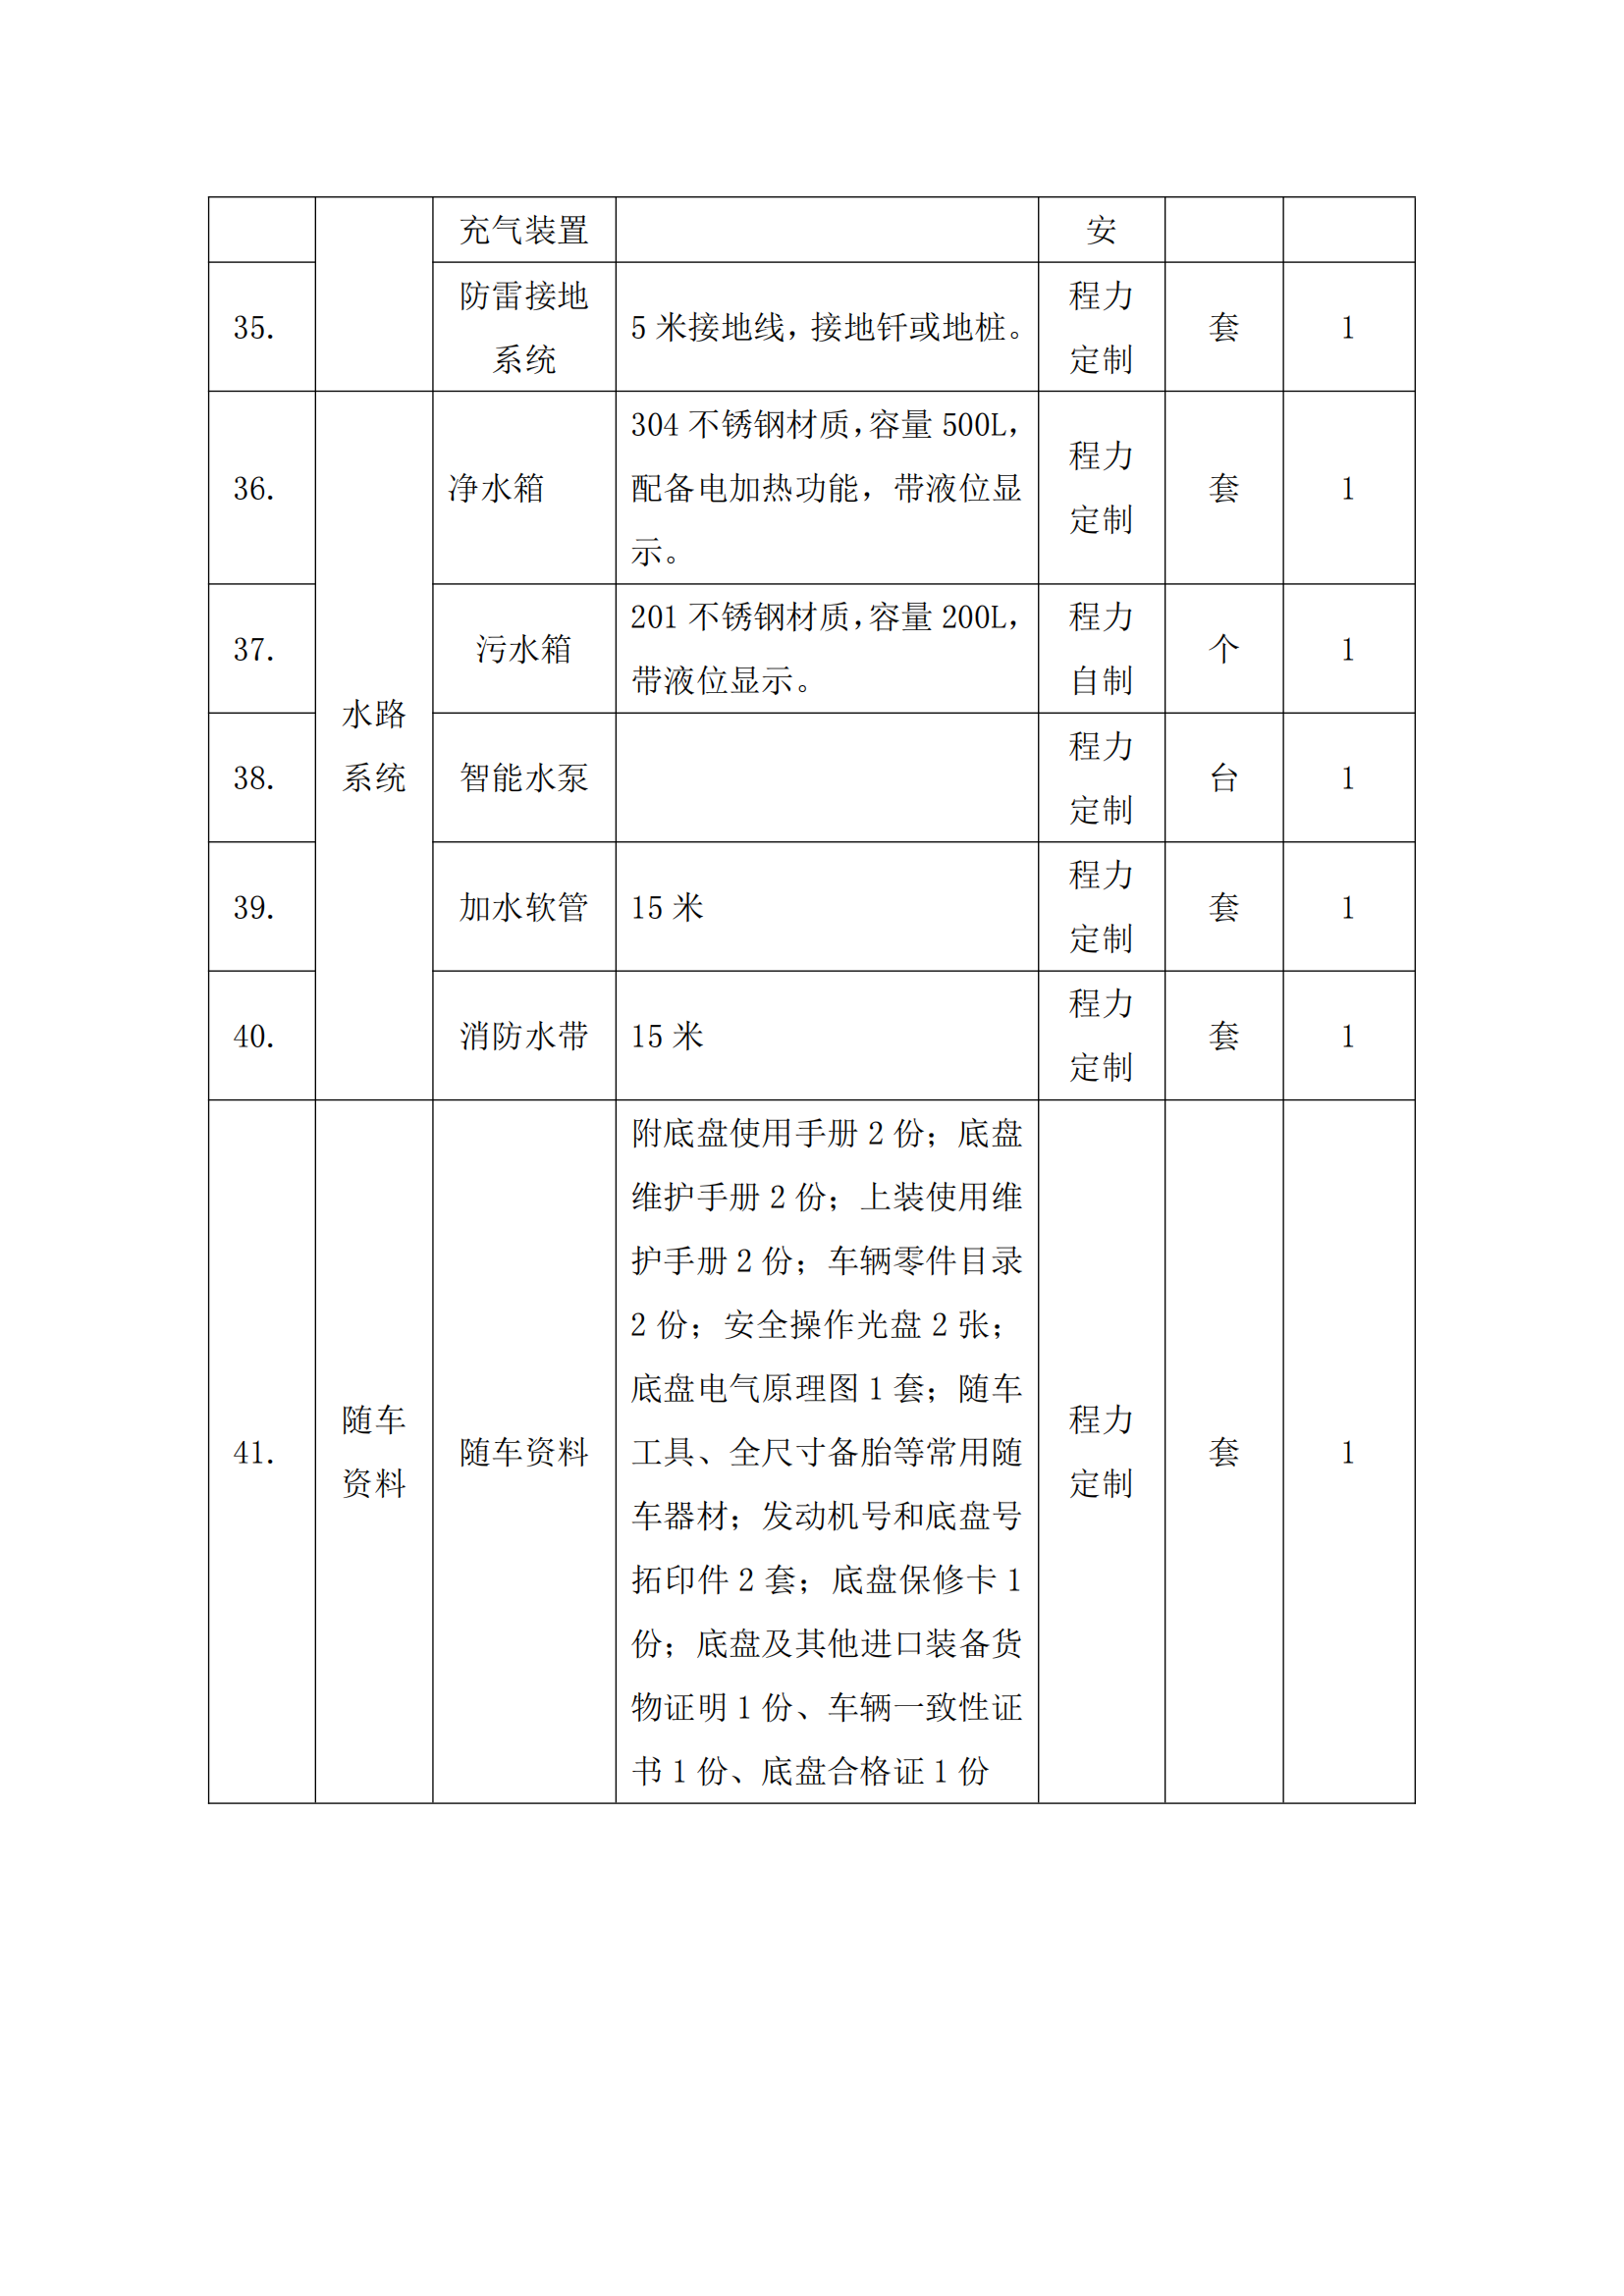 第二批次 宿营车 24人技术规格书 汕德 卡(金广)_83.png